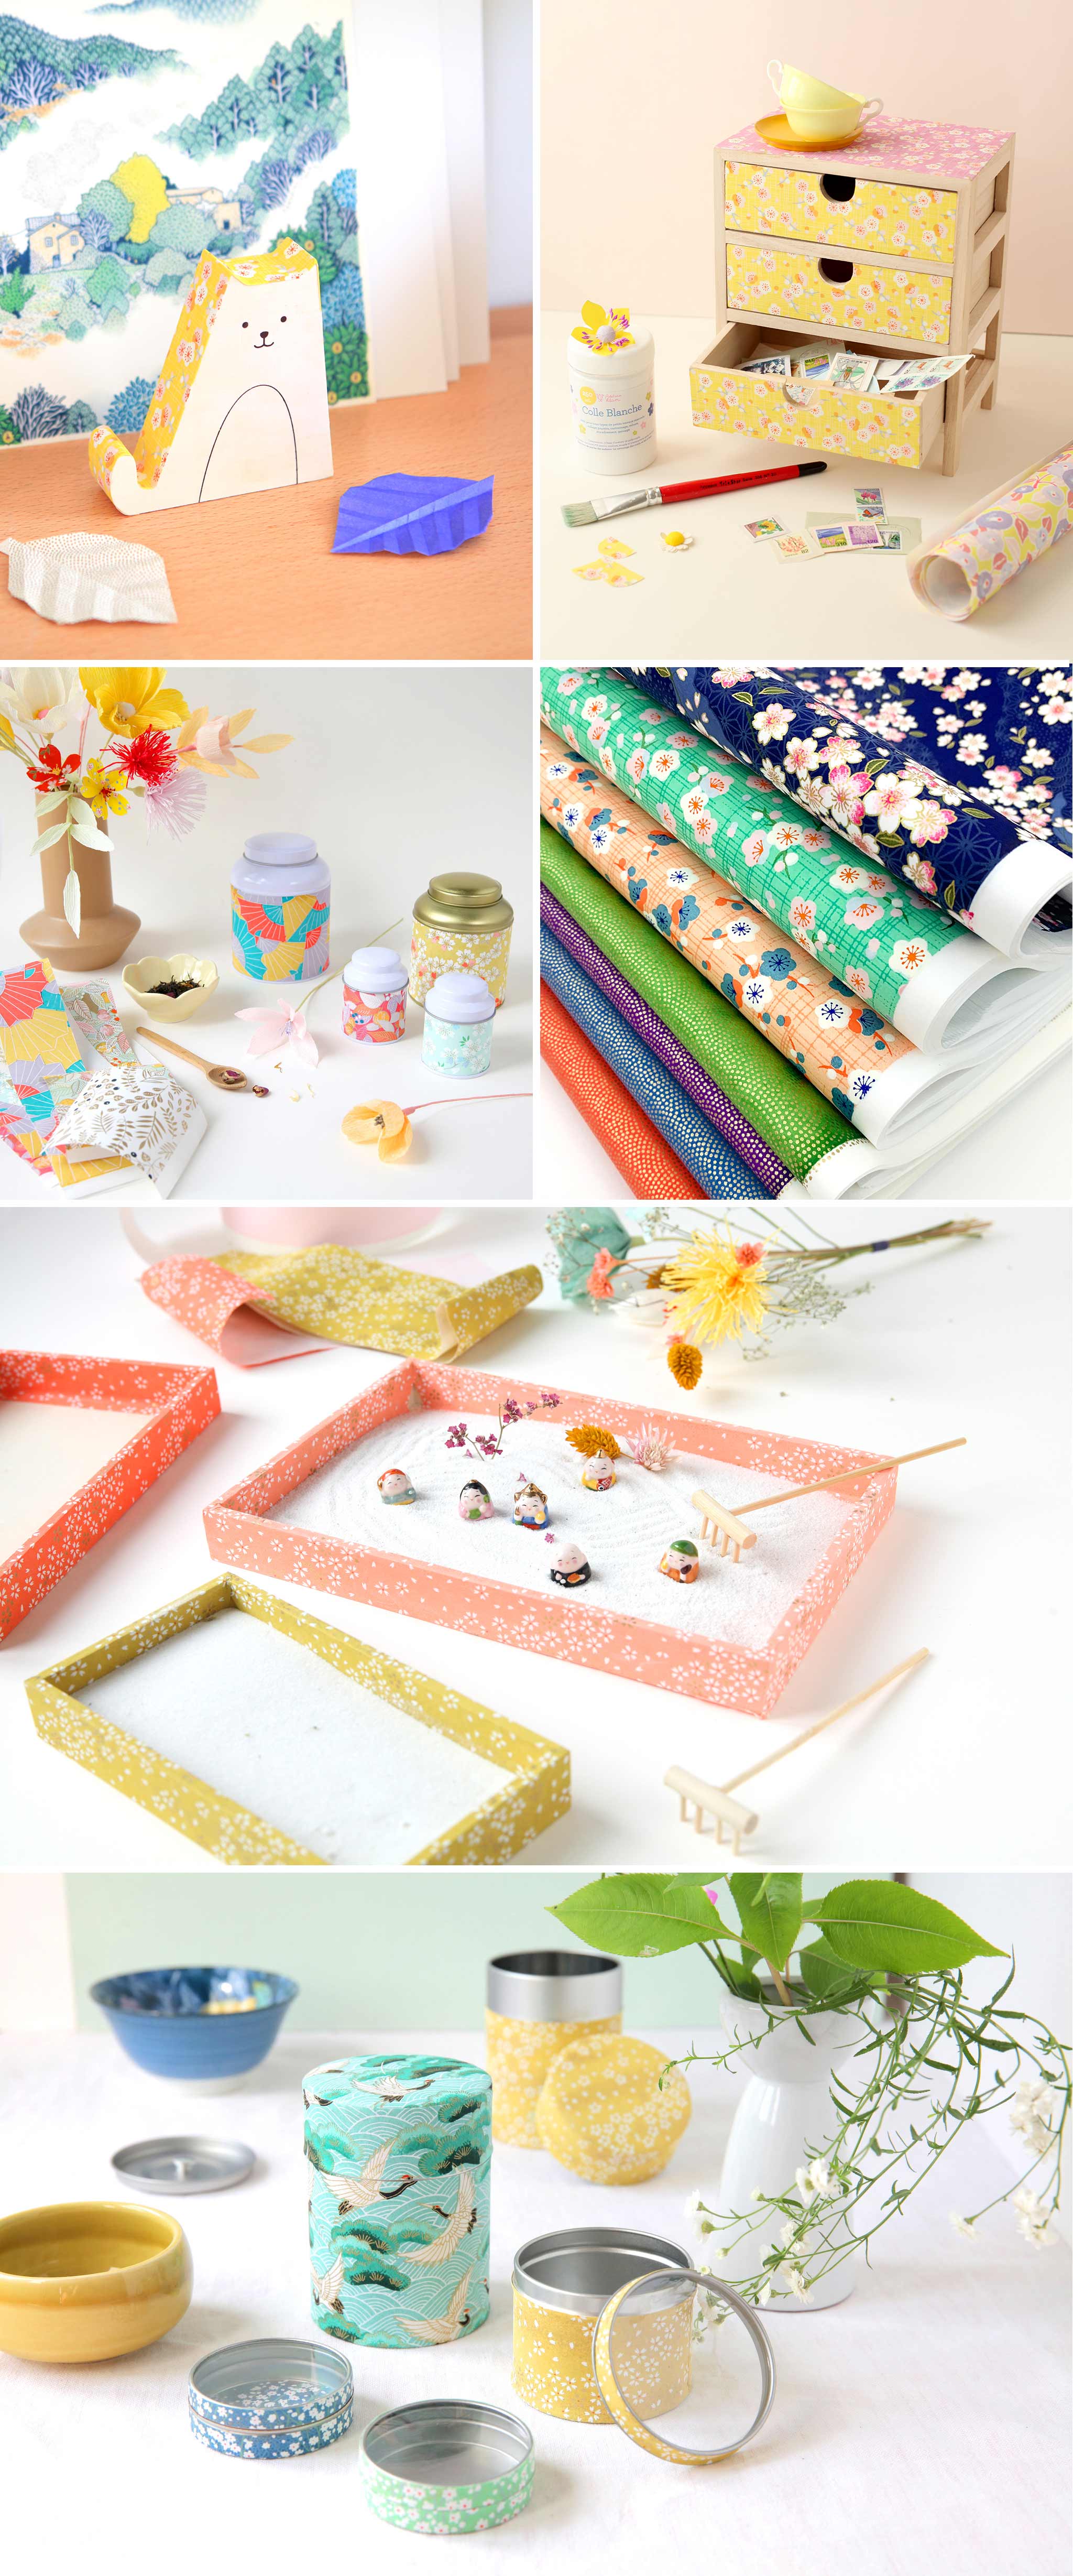 objets de décoration et boîtes de rangement en bois et en métal recouvert de papiers japonais dans des tons multicolores